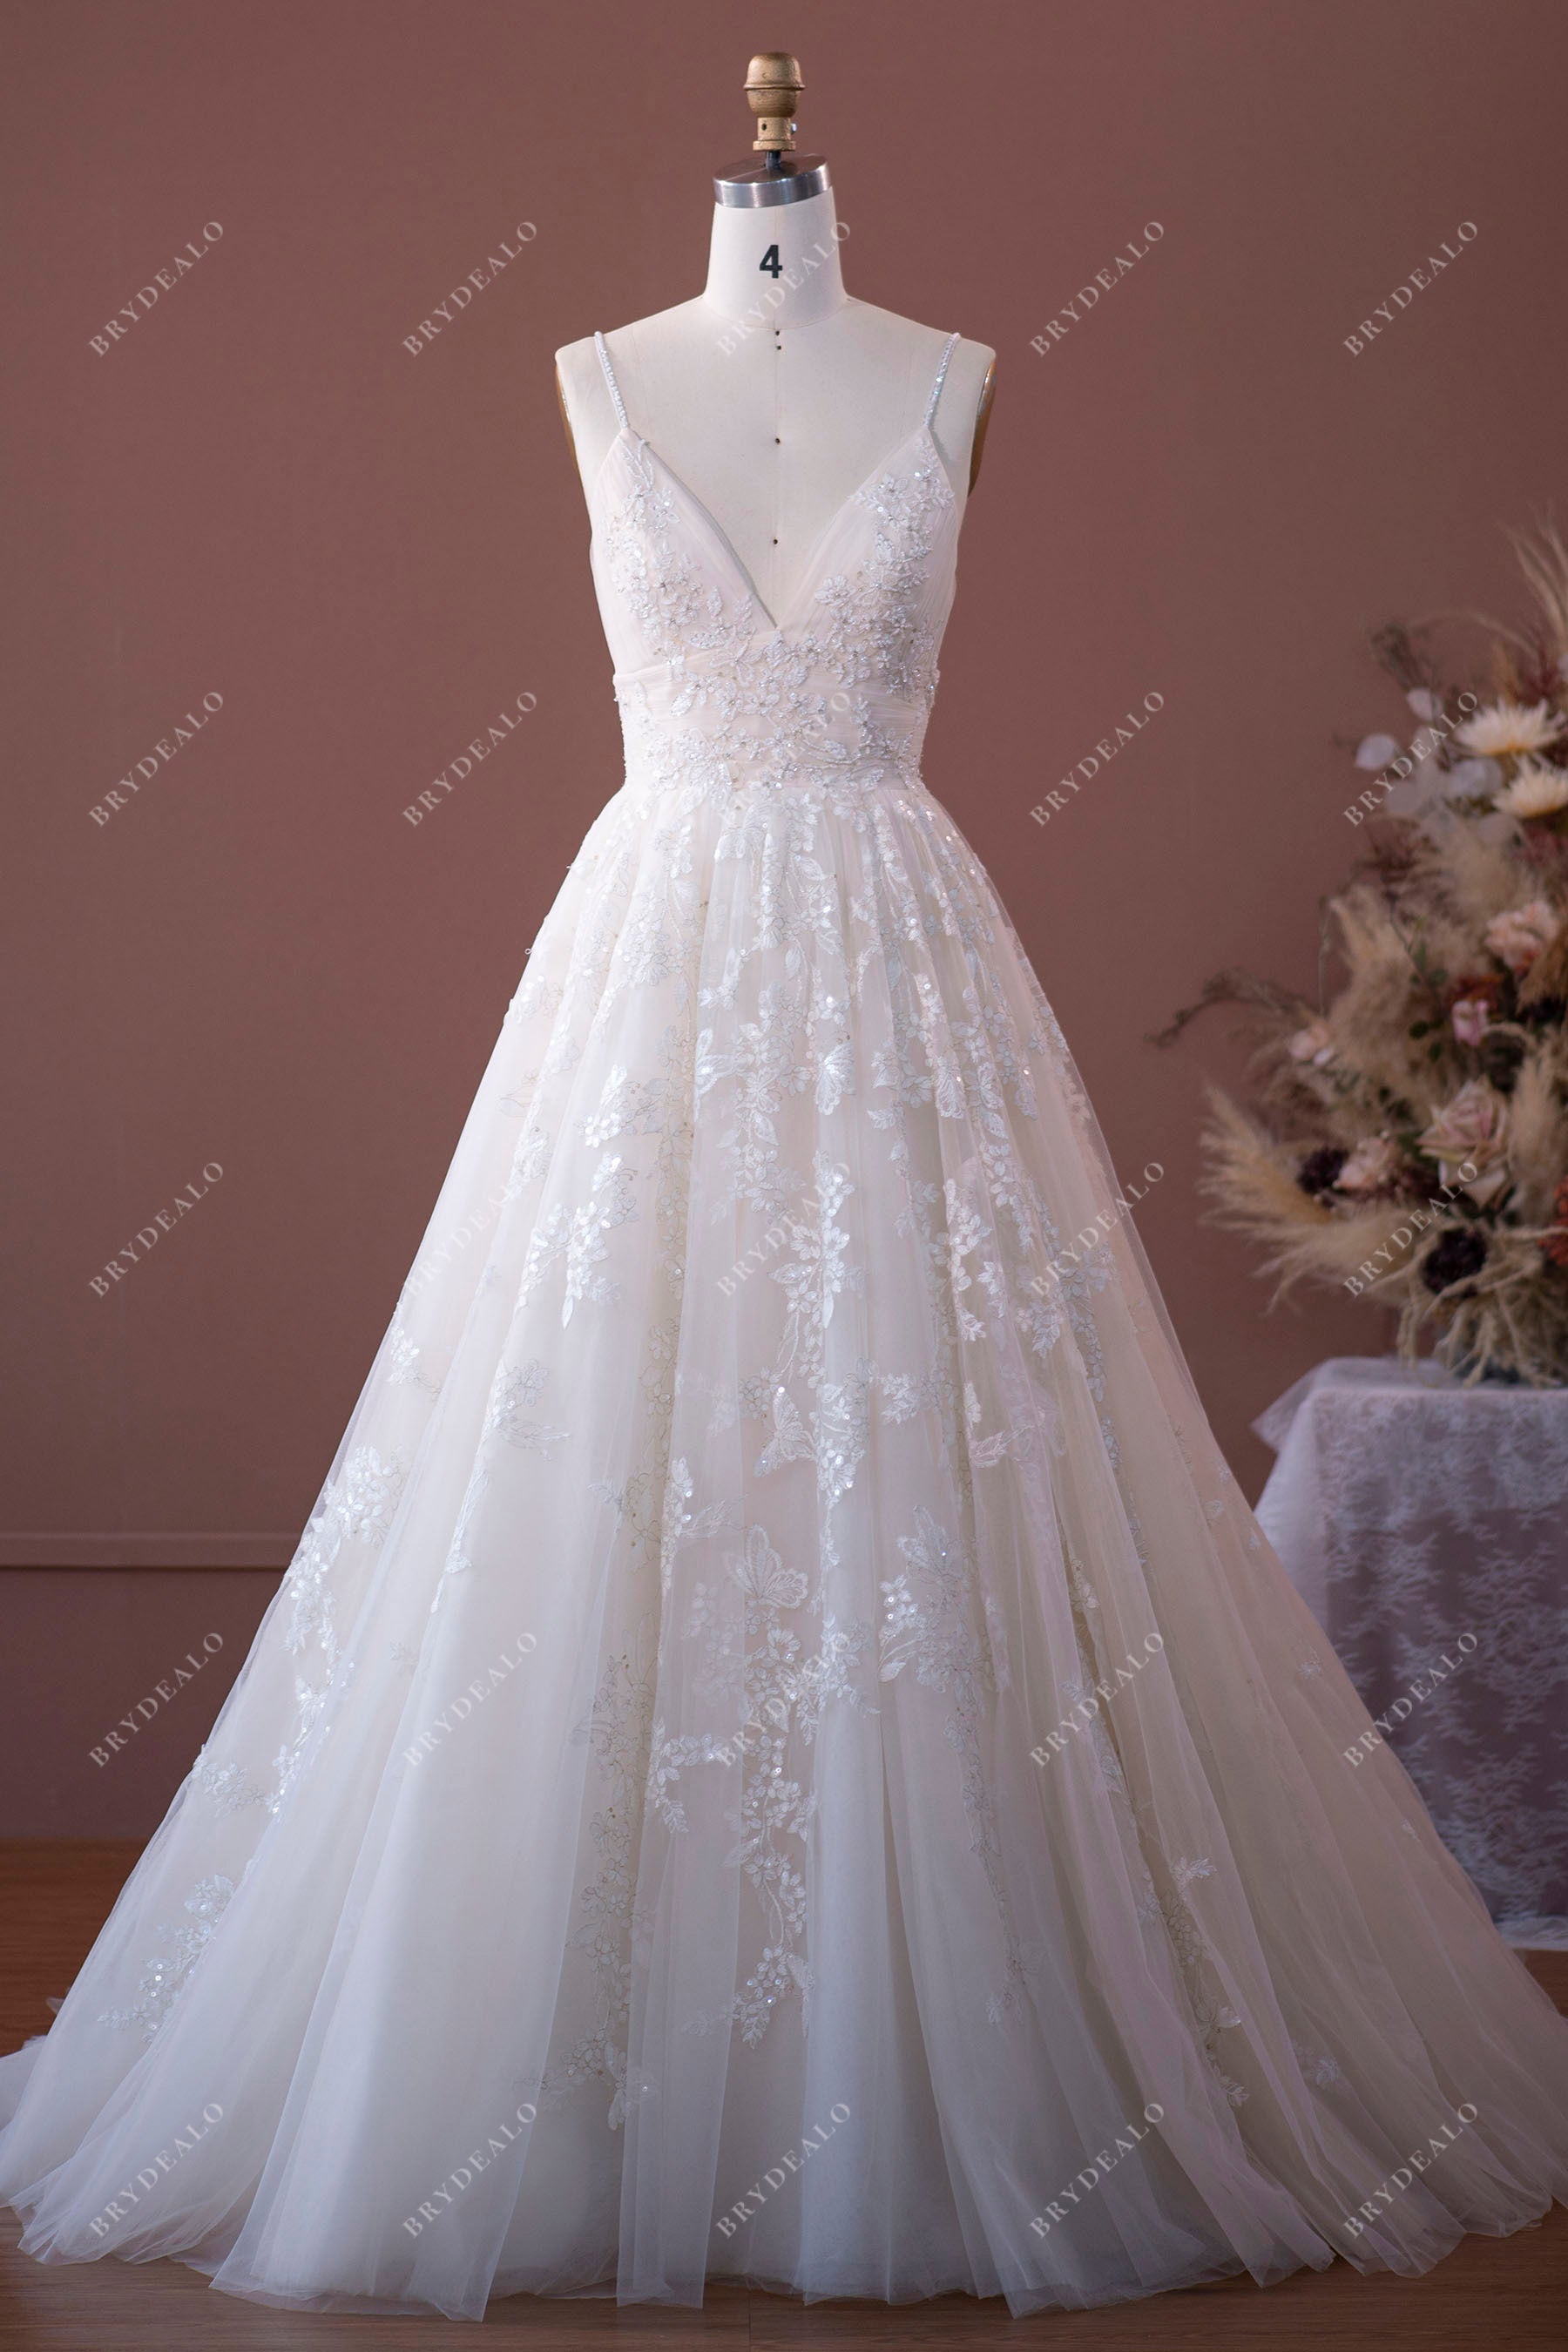 V-neck summer lace bridal dress